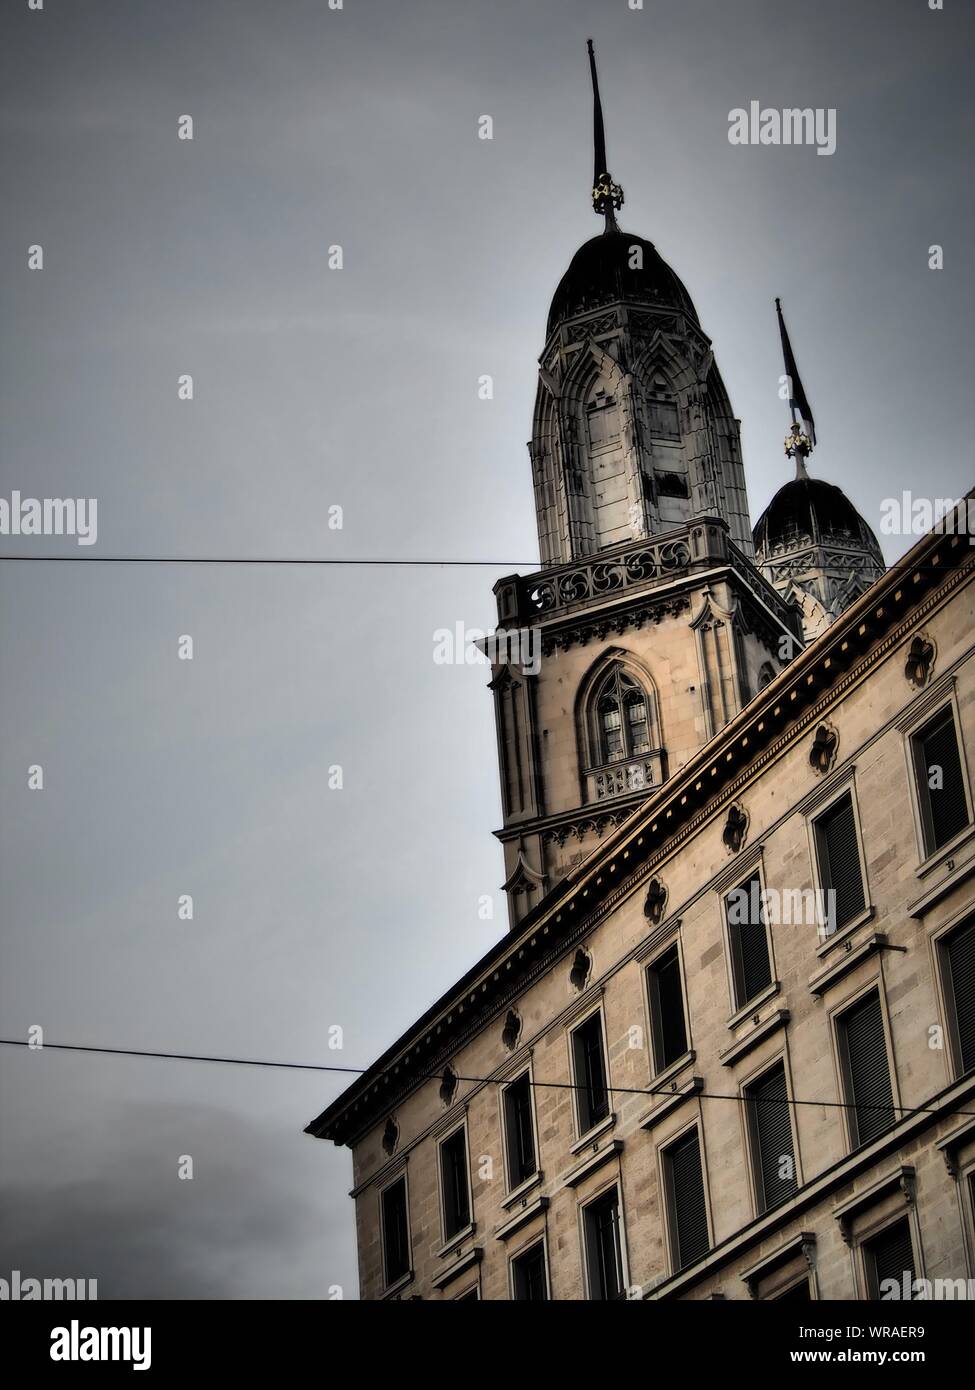 Zurigo scuro edificio illuminato scene Foto Stock